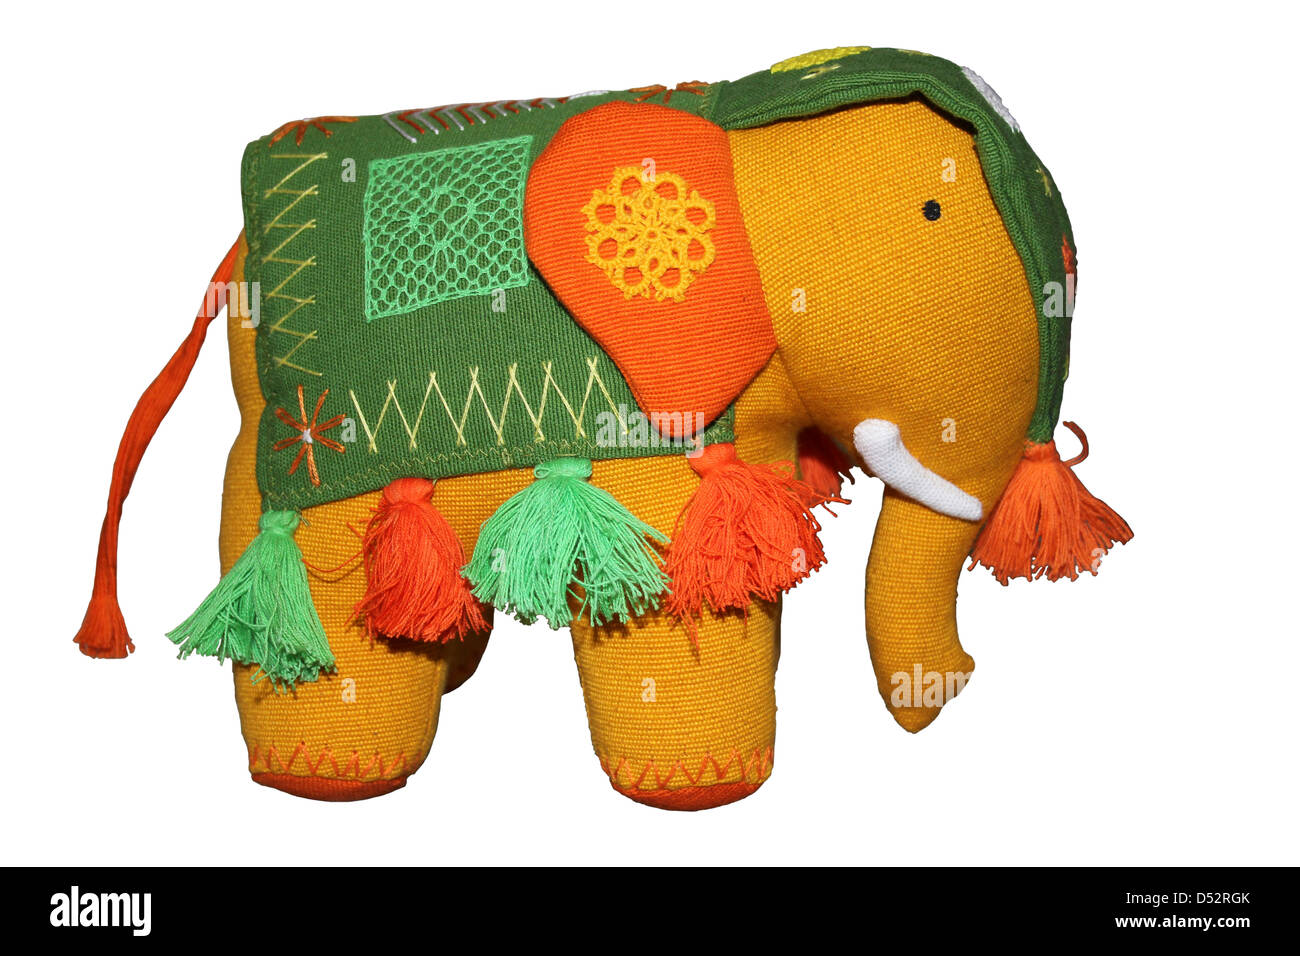 Felt Elephant Toy Stock Photo